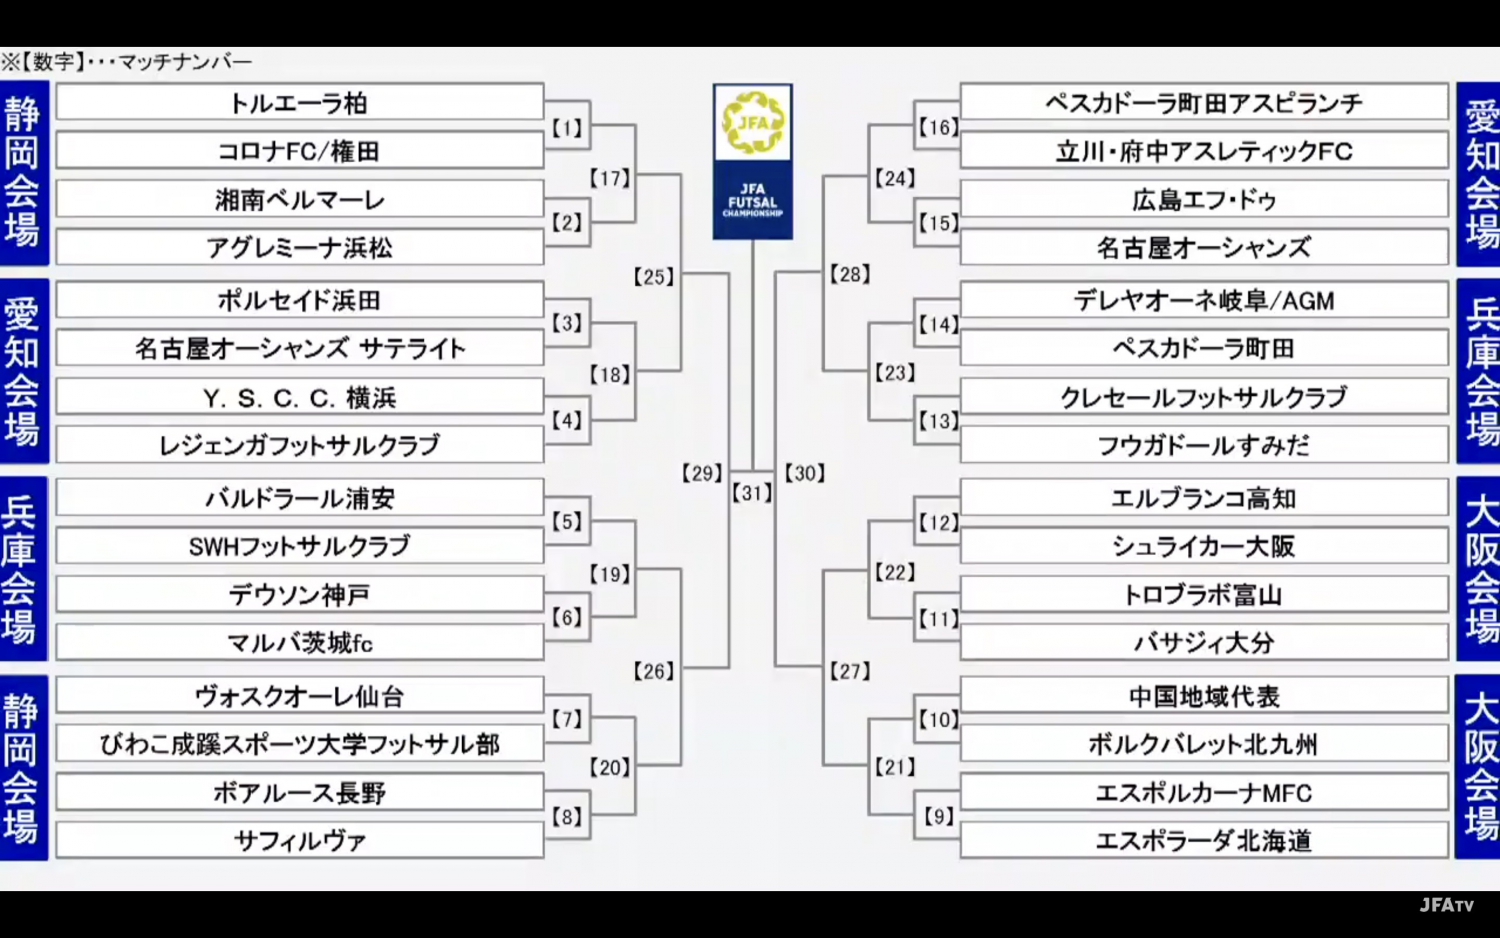 第25回全日本フットサル選手権大会の対戦カードが決定 トーナメント表の右の山が強豪揃いに フットサル全力応援メディア Sal